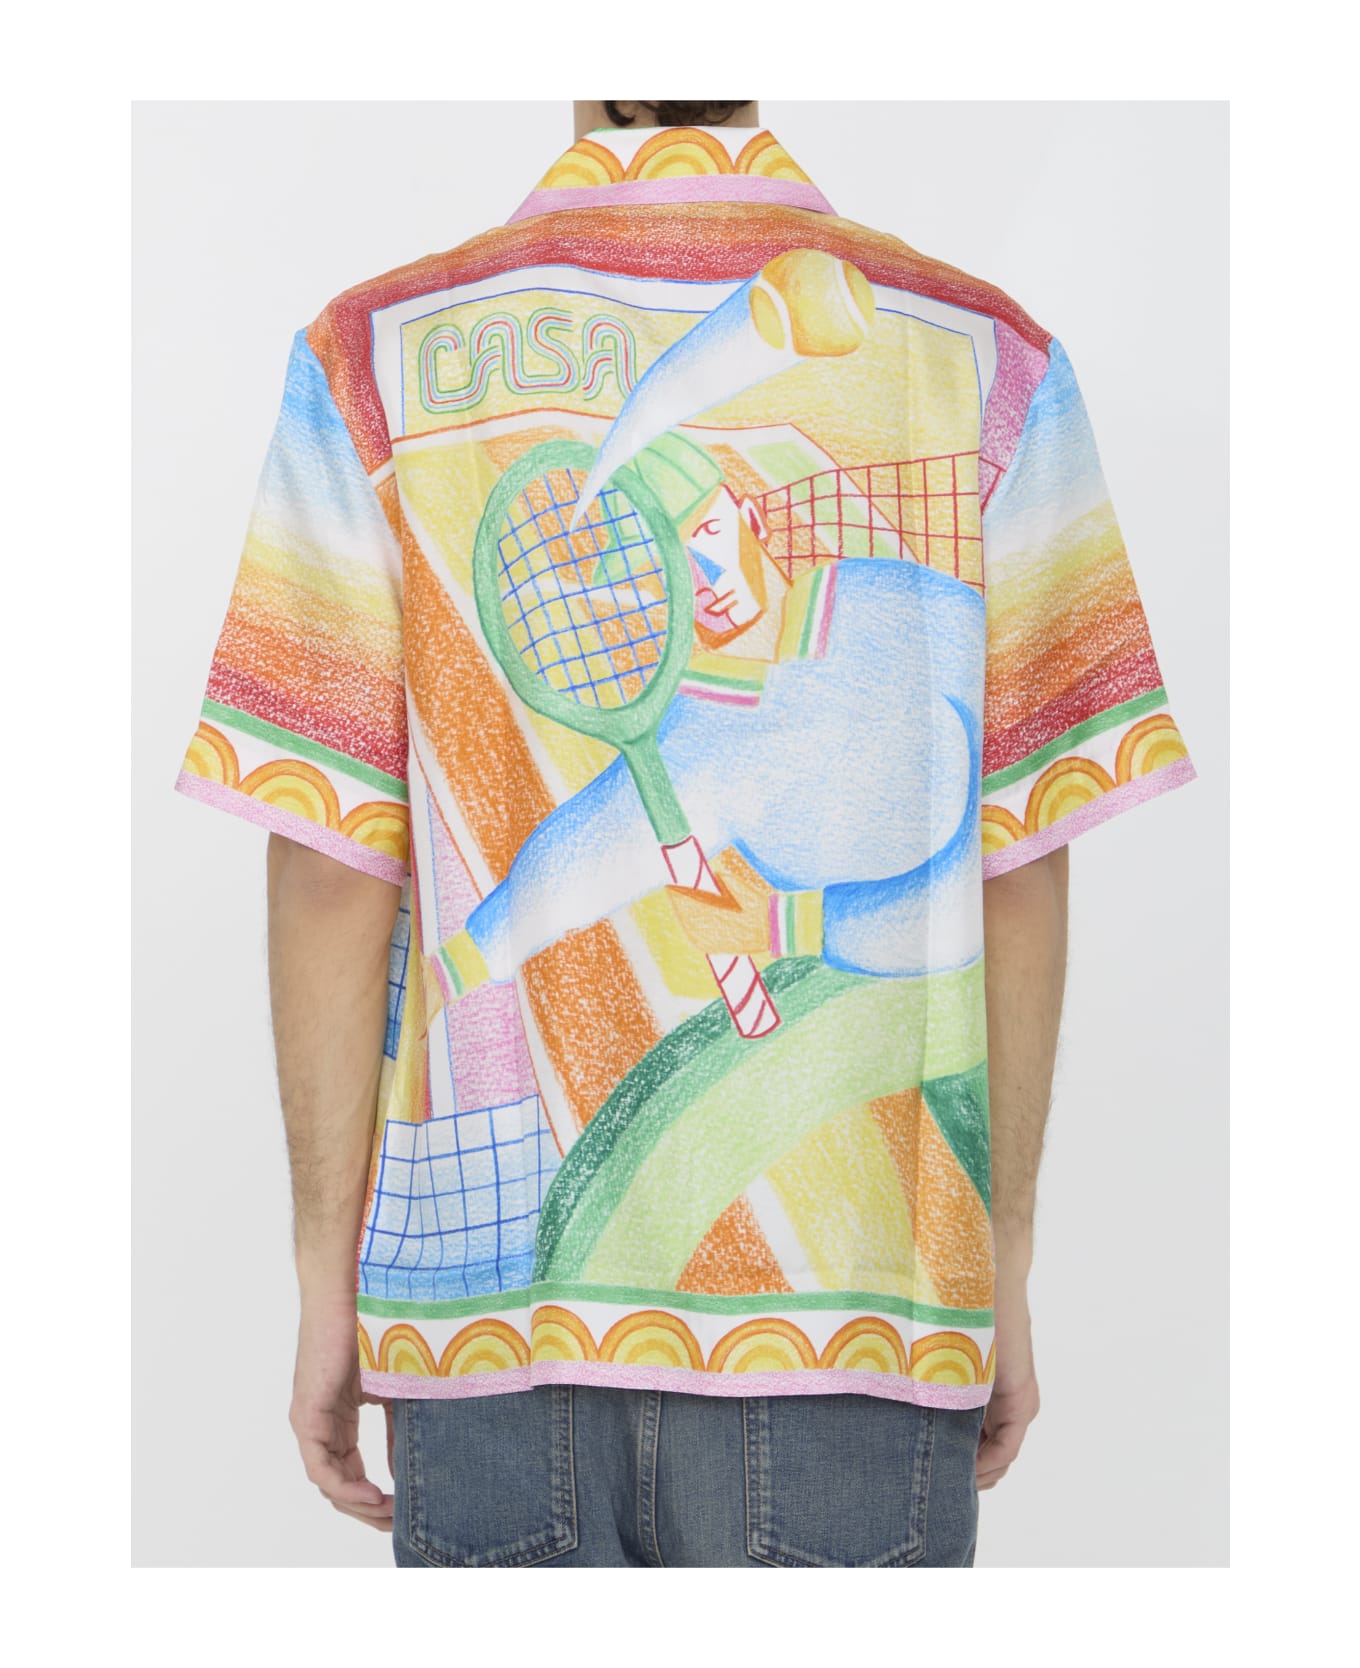 Casablanca Crayon Tennis Player Shirt - MULTICOLOR